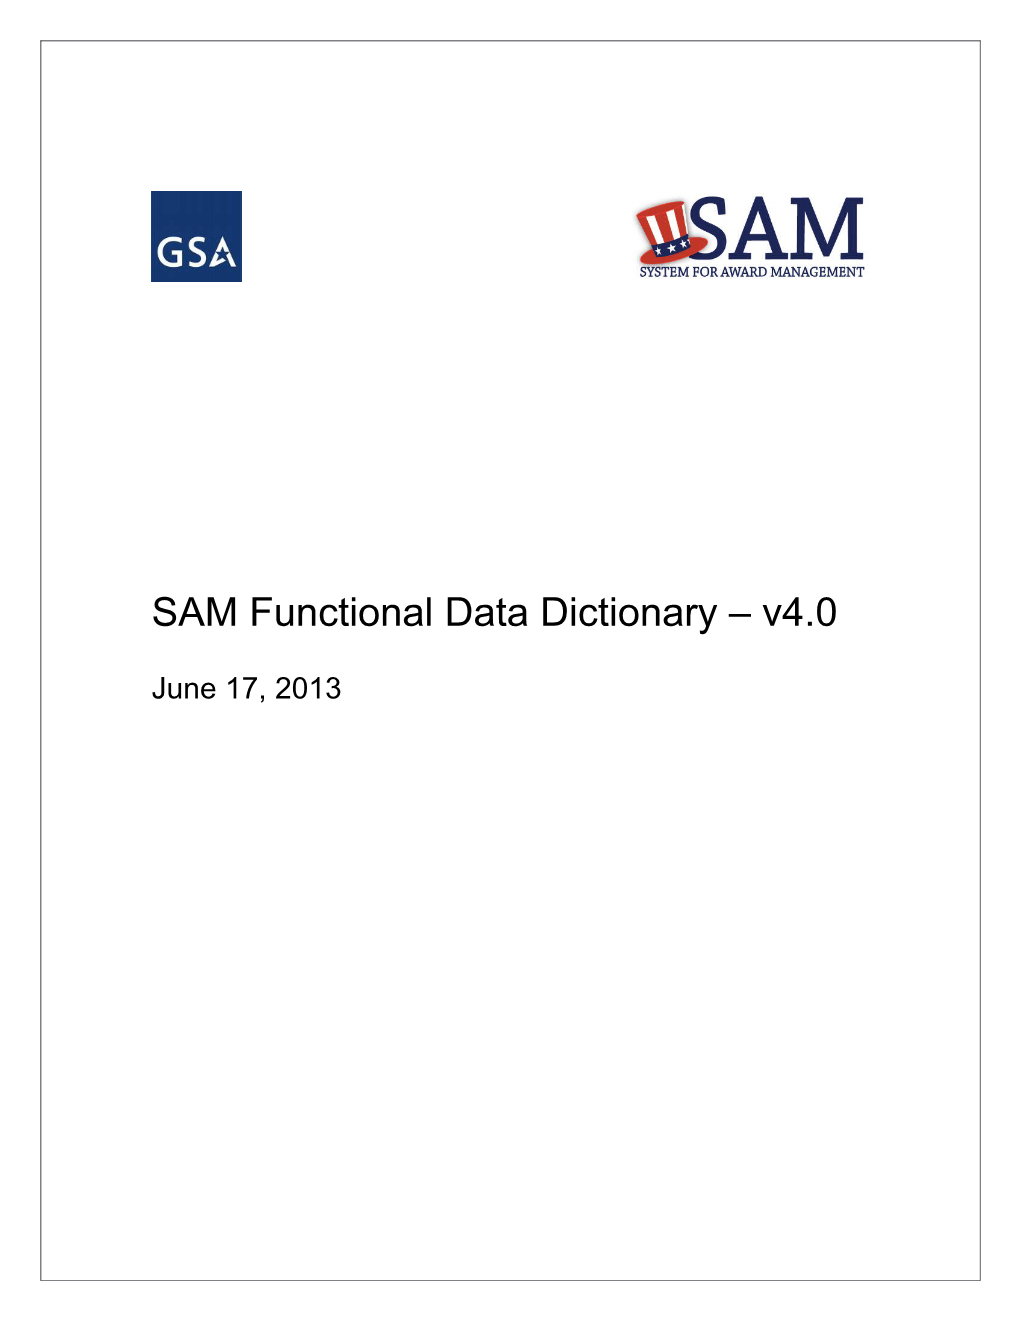 SAM Functional Data Dictionary V4.0